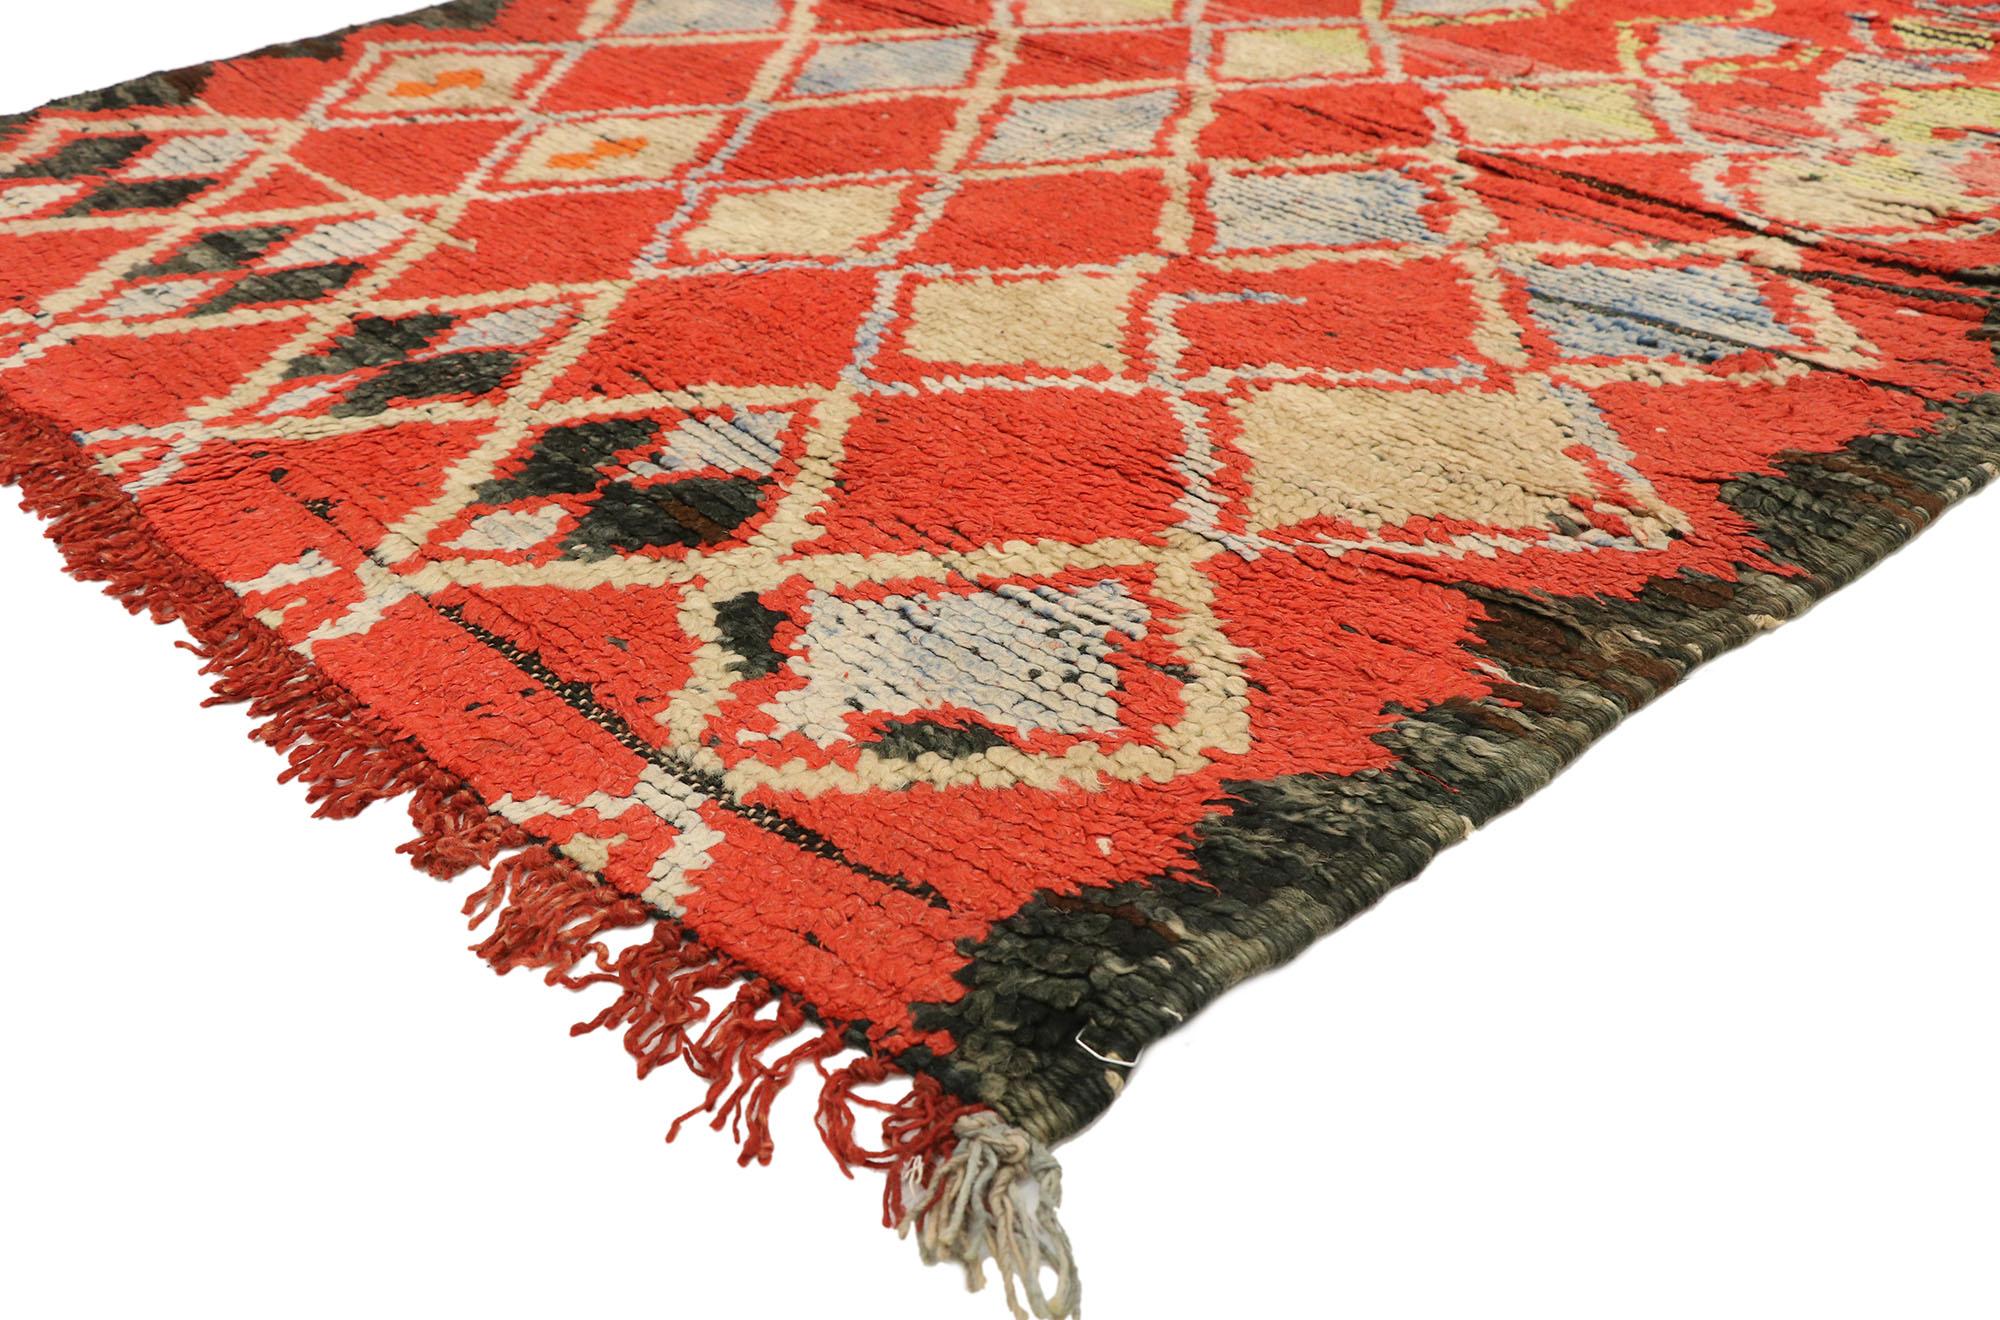 20233 Tapis marocain vintage rouge Boujad, 04'04 x 07'04. Plongez dans l'esprit vibrant des tapis de Boujad, qui émergent des rues animées de Boujad, dans la région de Khouribga. Artistisés par les tribus berbères, notamment les Haouz et les